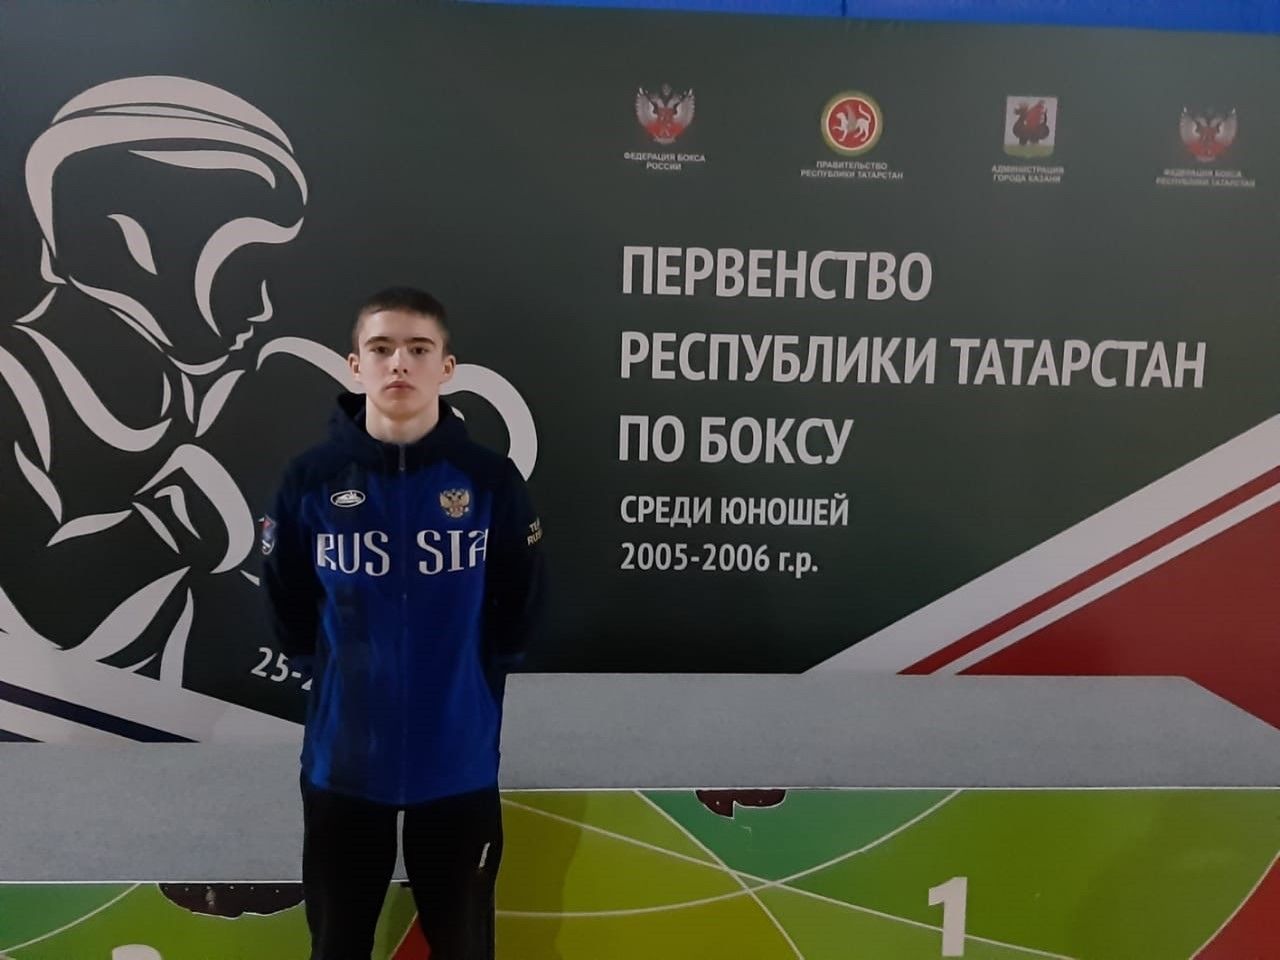 Спортивный талант дети Новошешминска развивают в 8 видах спорта